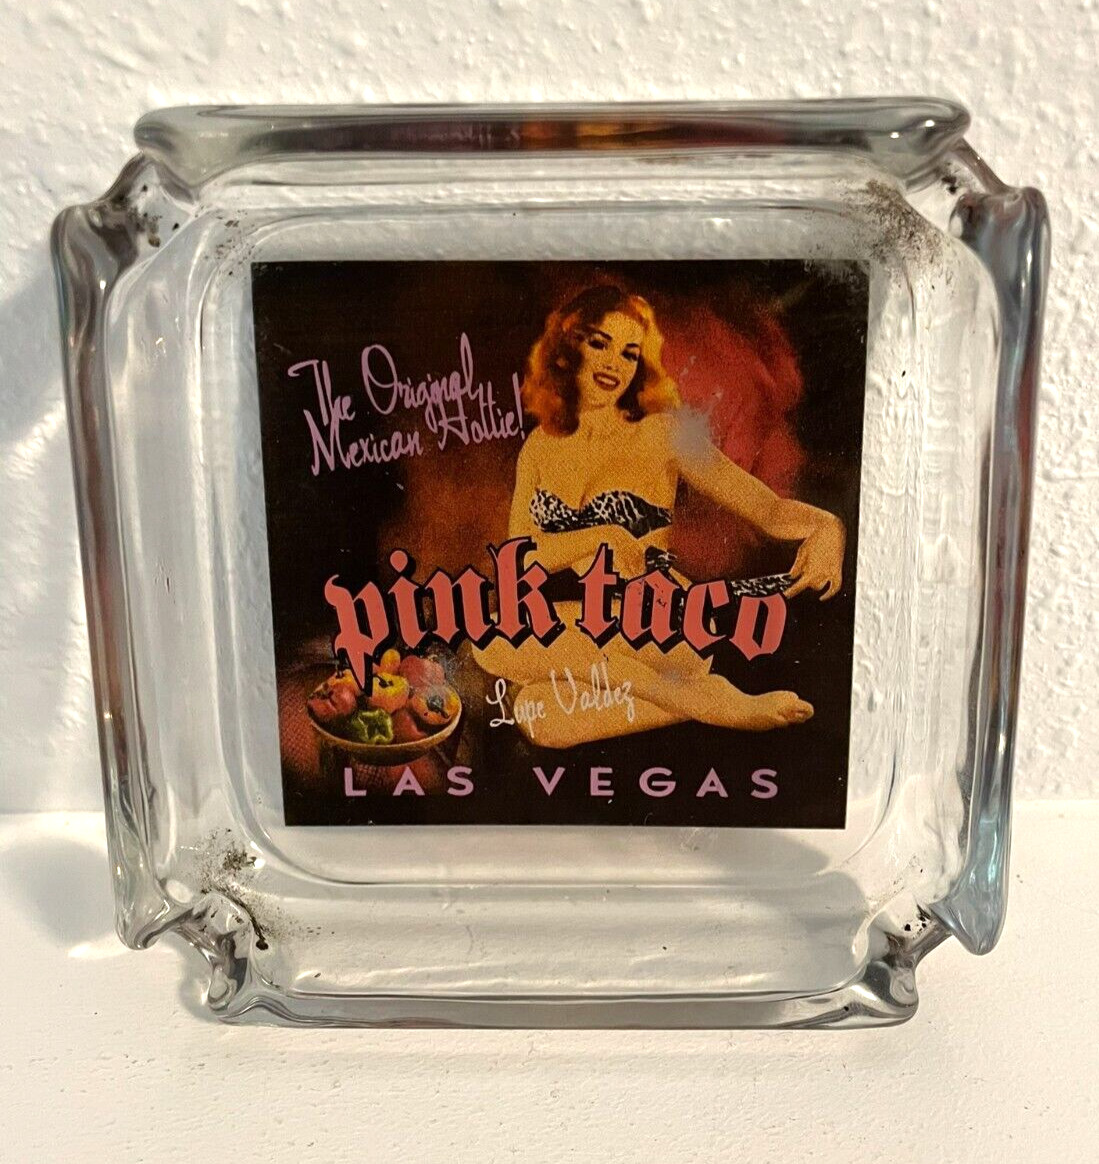 Vintage Pink Taco Ashtray Las Vegas The Original Mexican Hottie Hard Rock